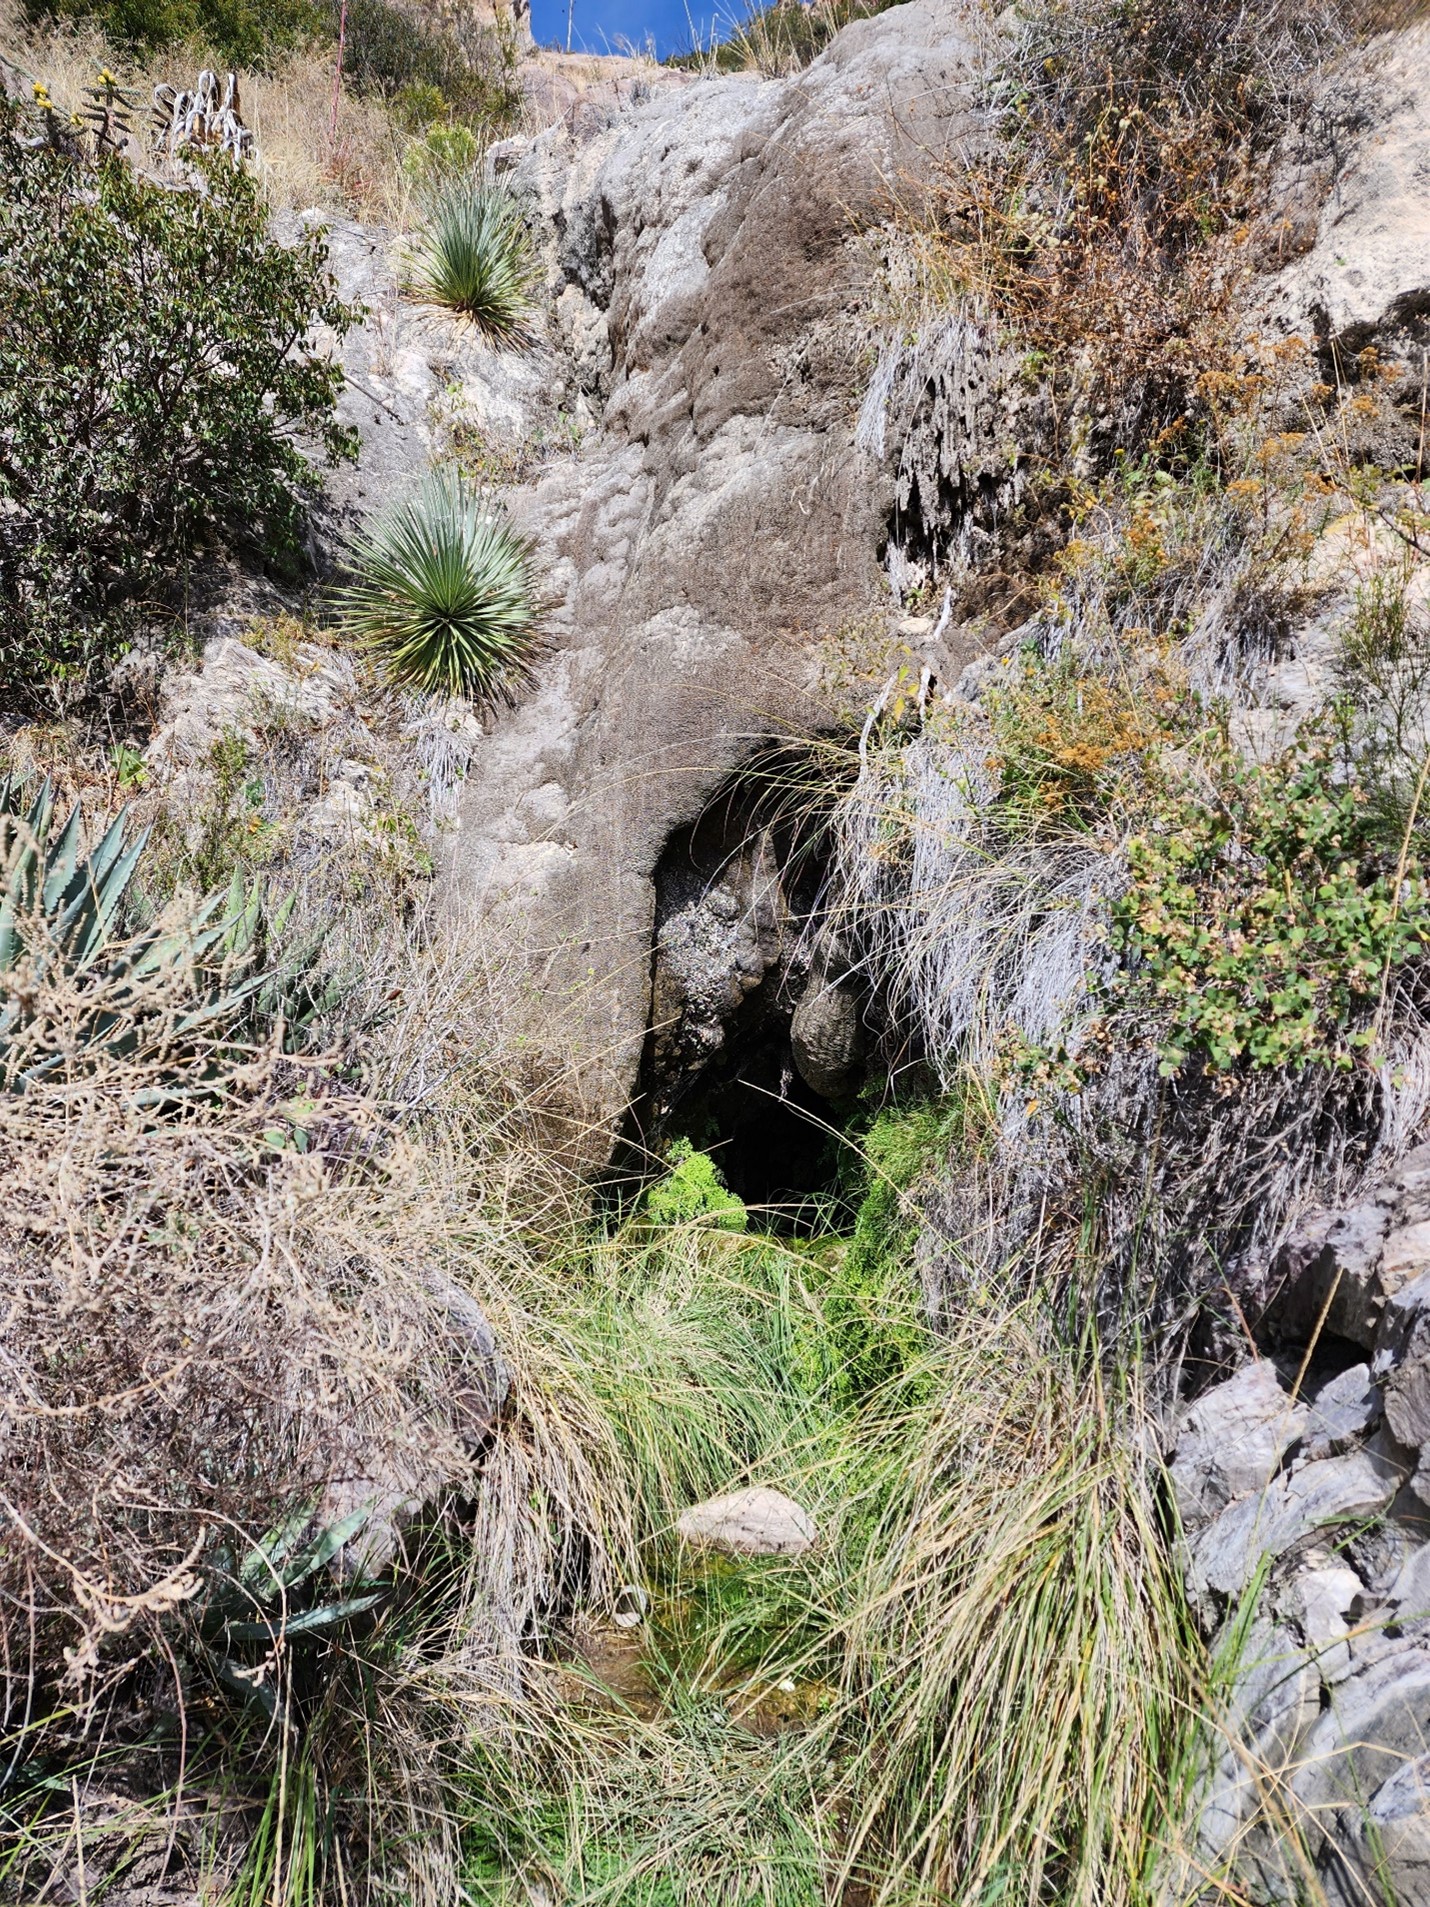 Cave entrance on desert hillside.